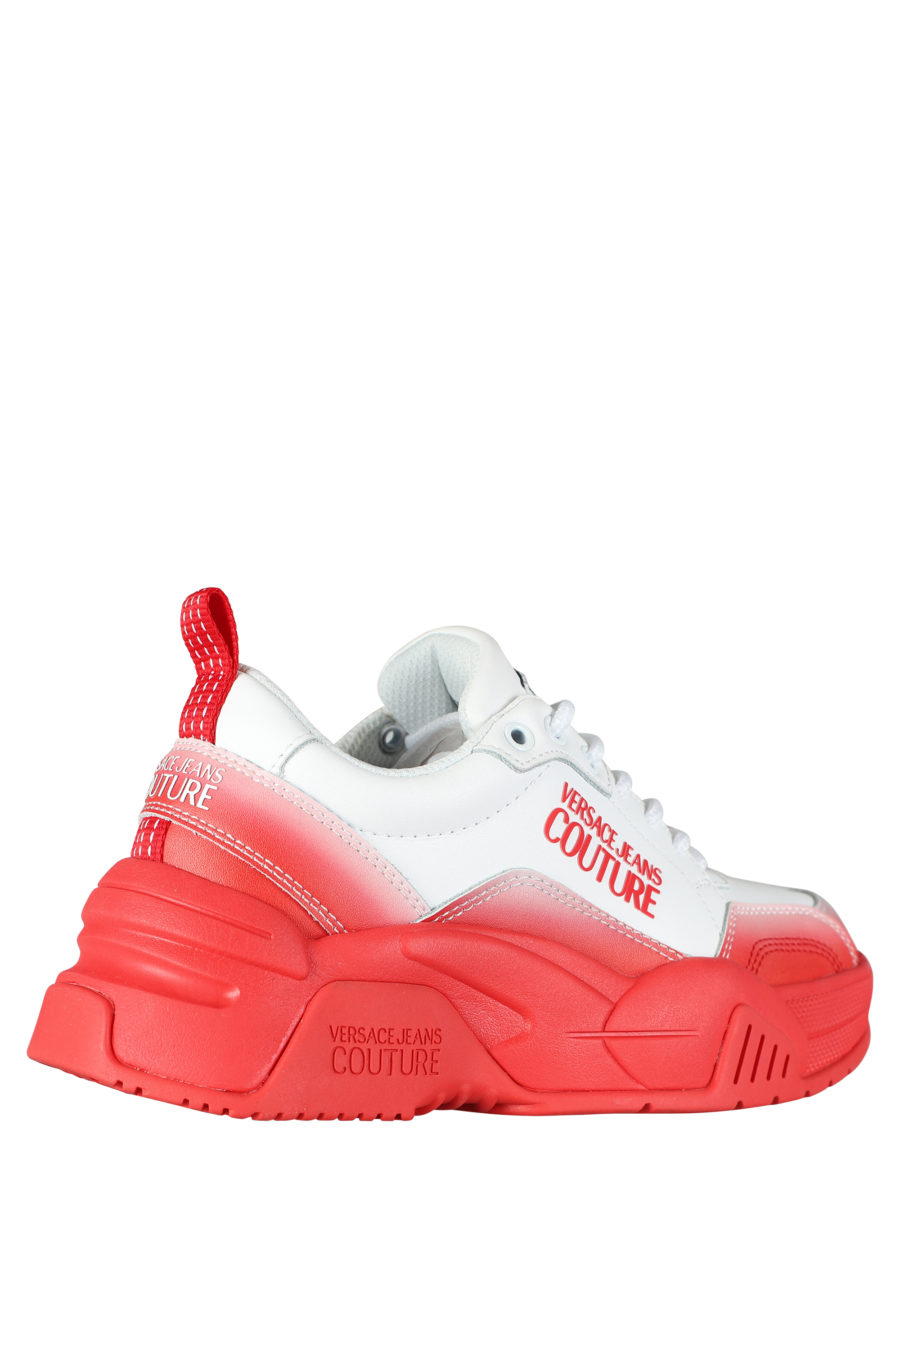 Zapatillas blancas con degrade rojo "stargaze" - IMG 5266